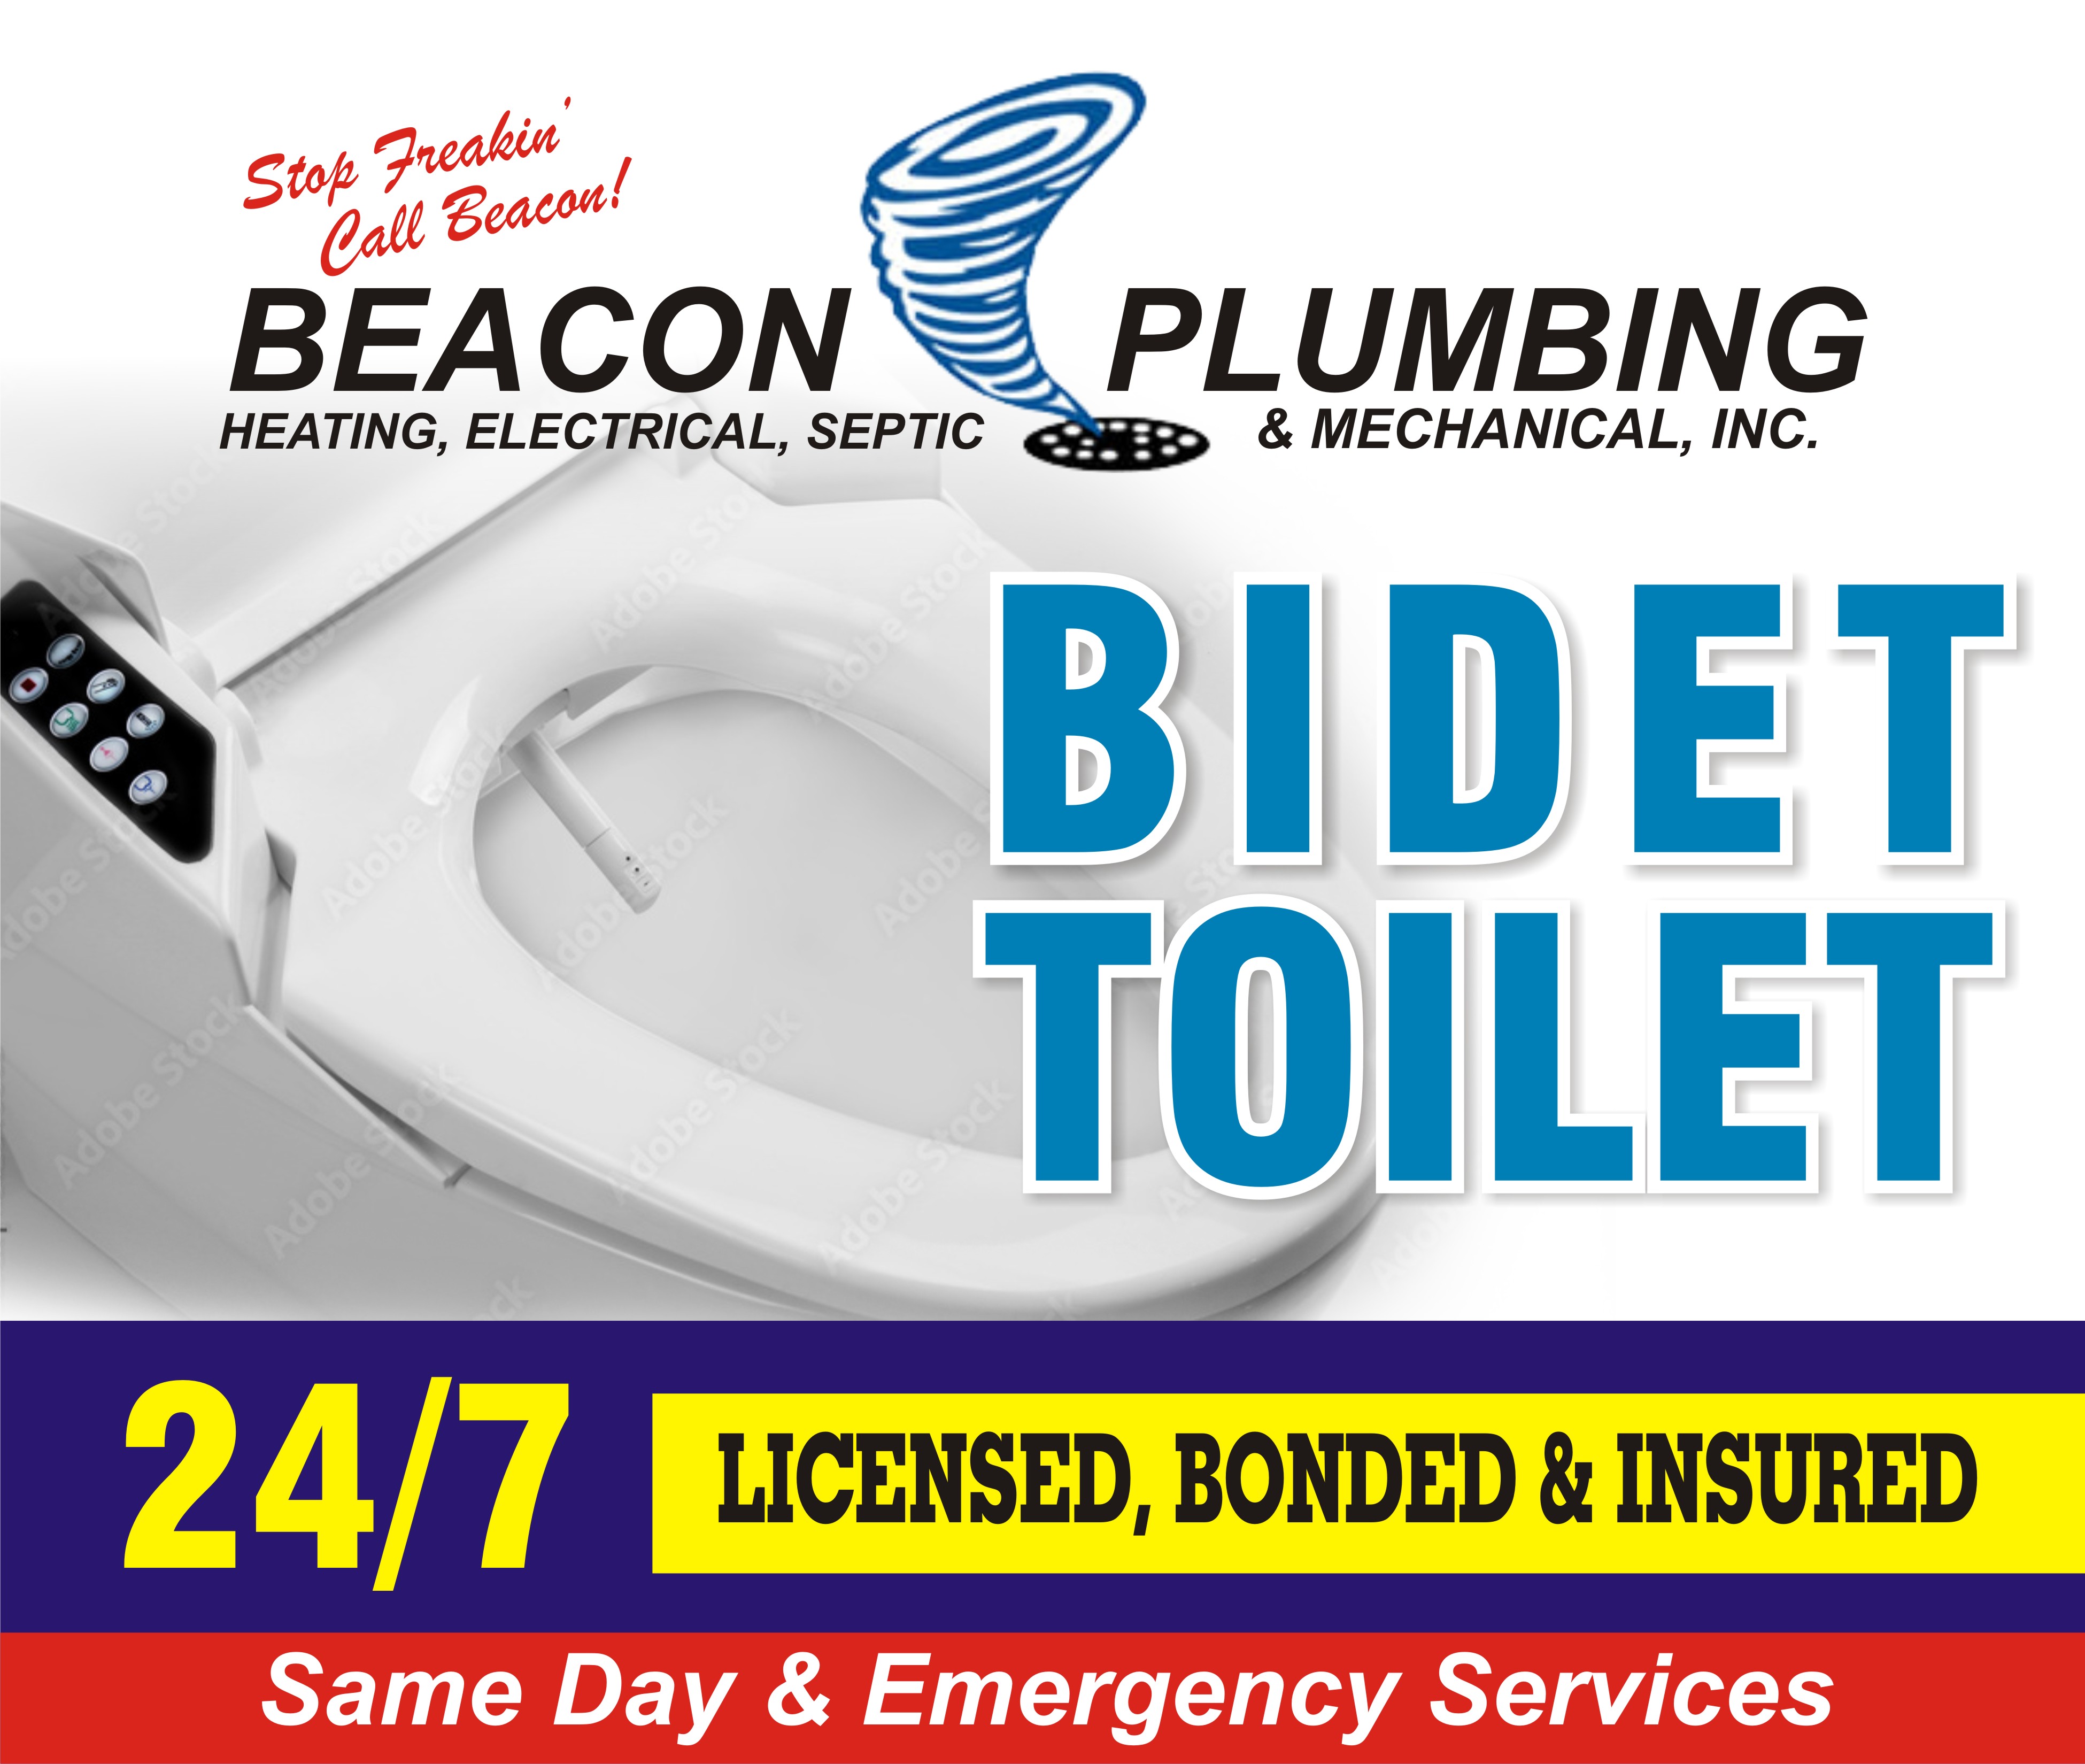 Premium Browns Point bidet toilet in WA near 98422